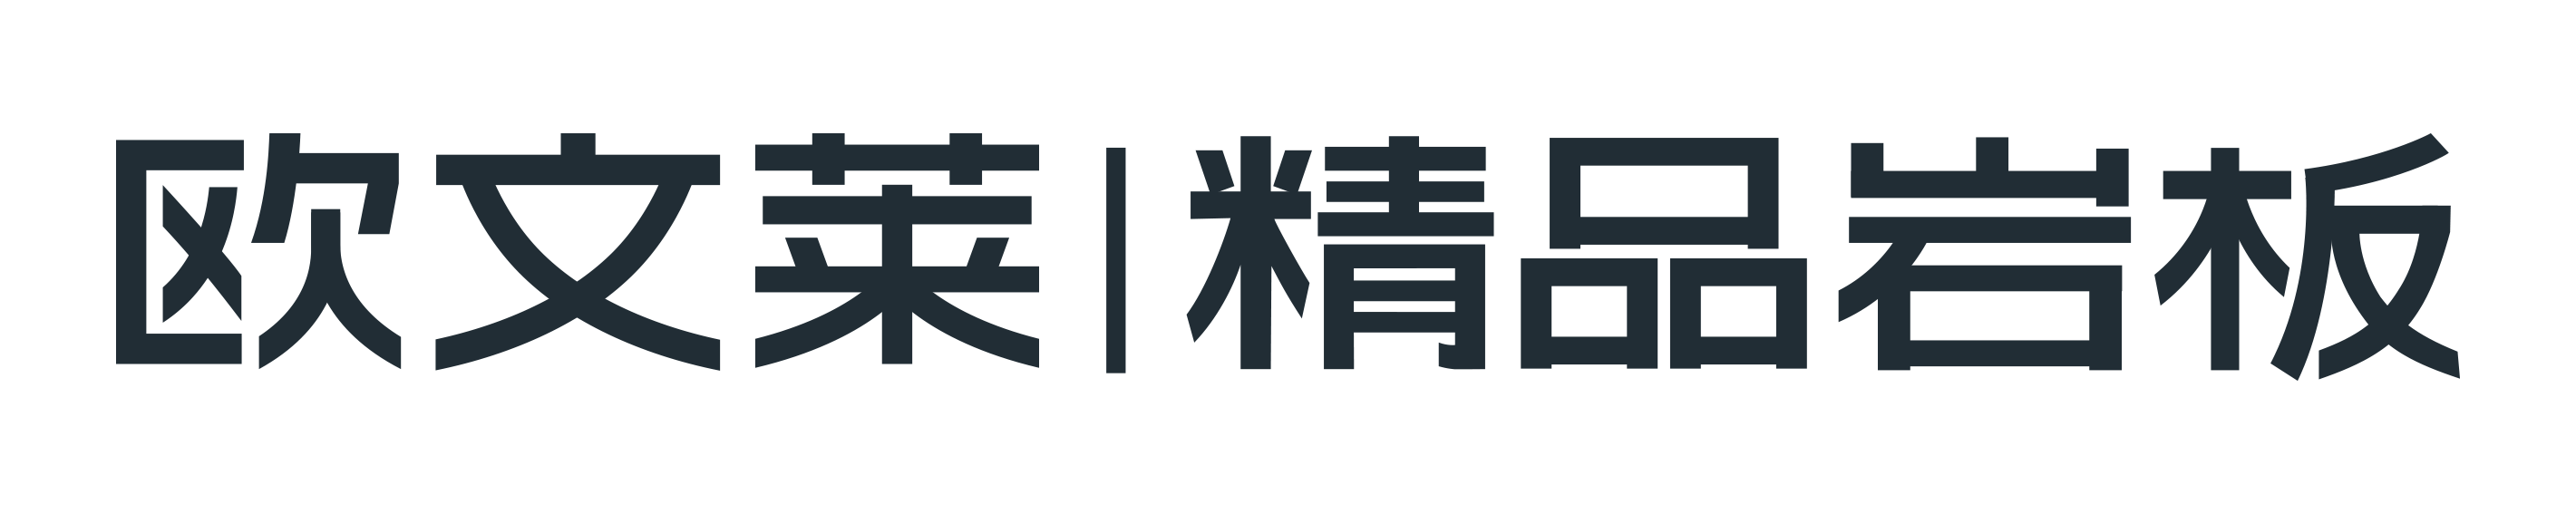 歐文萊精品巖板logo